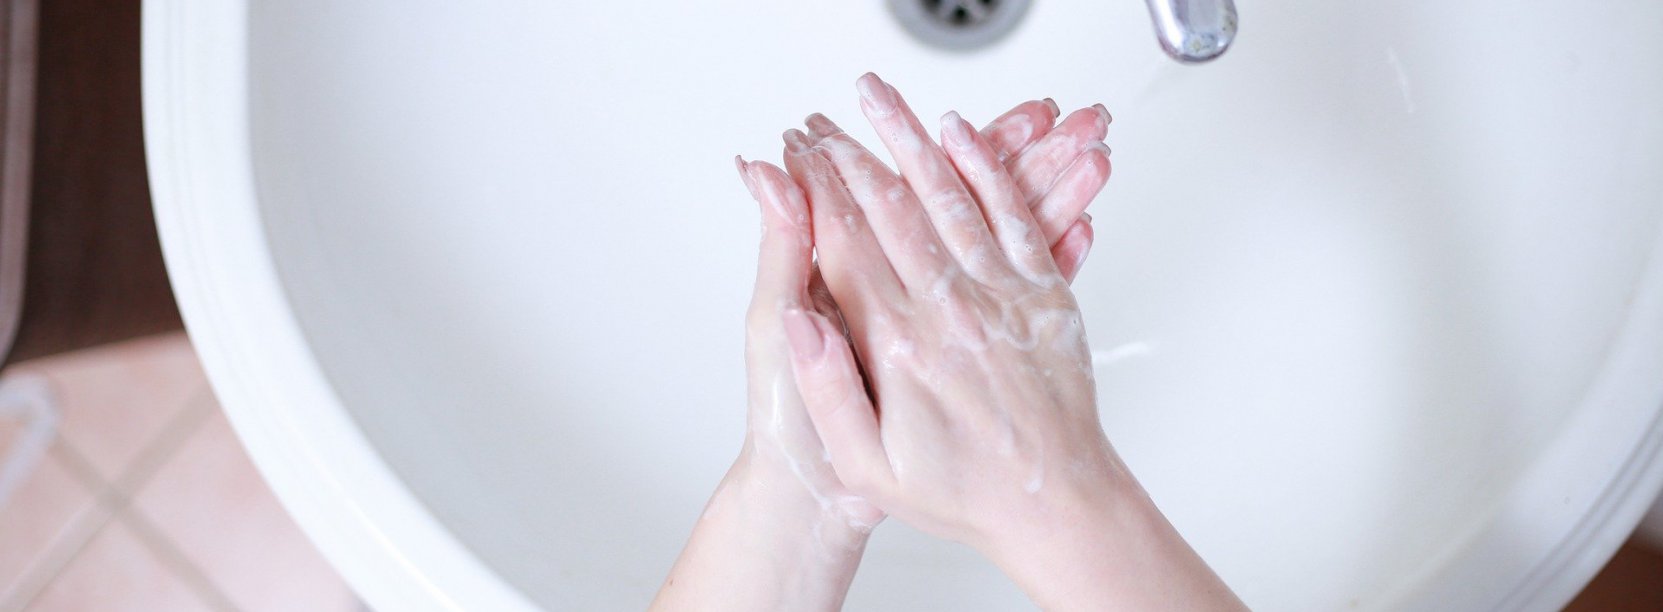 Mycie rąk w kranie widziane z góry